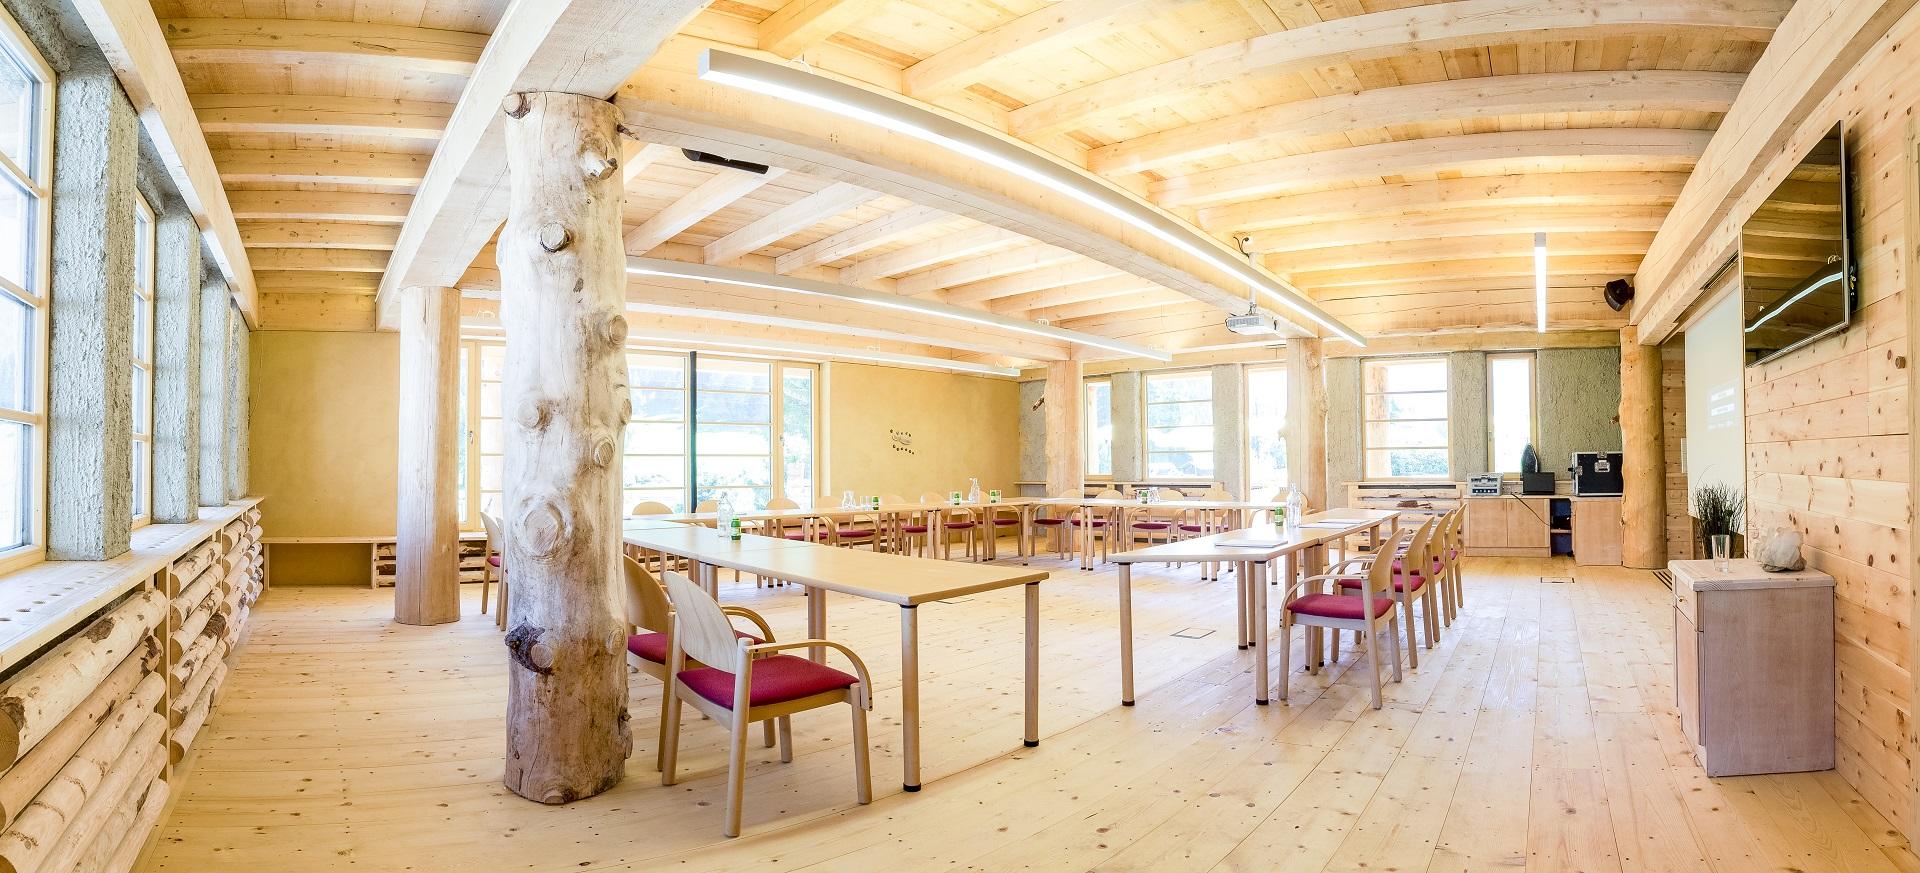 Seminarraum mit natürlichen Elementen in Almi's Berghote im Tiroler Wipptal